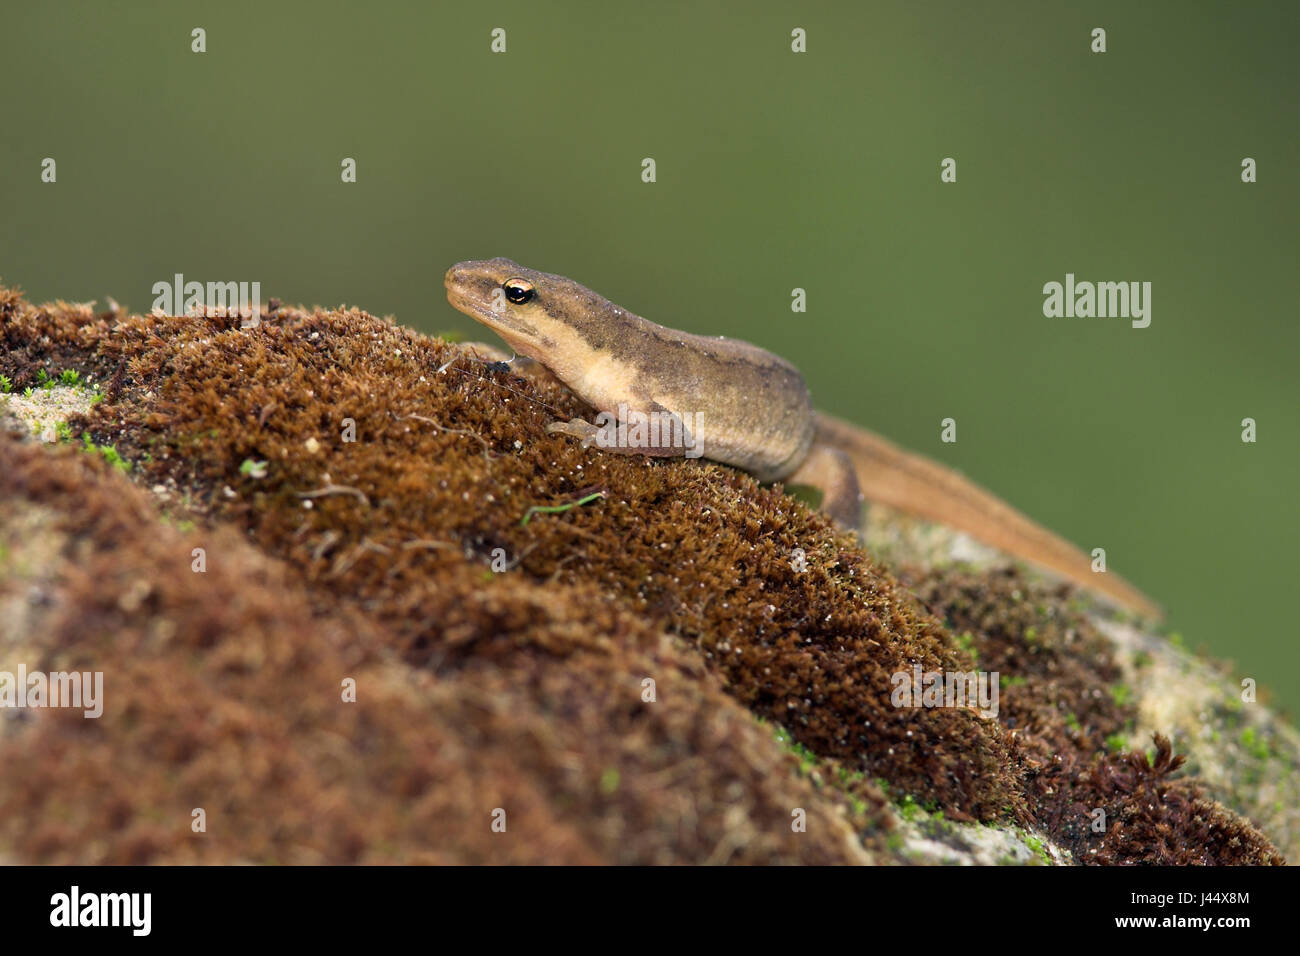 Common newt on land Stock Photo